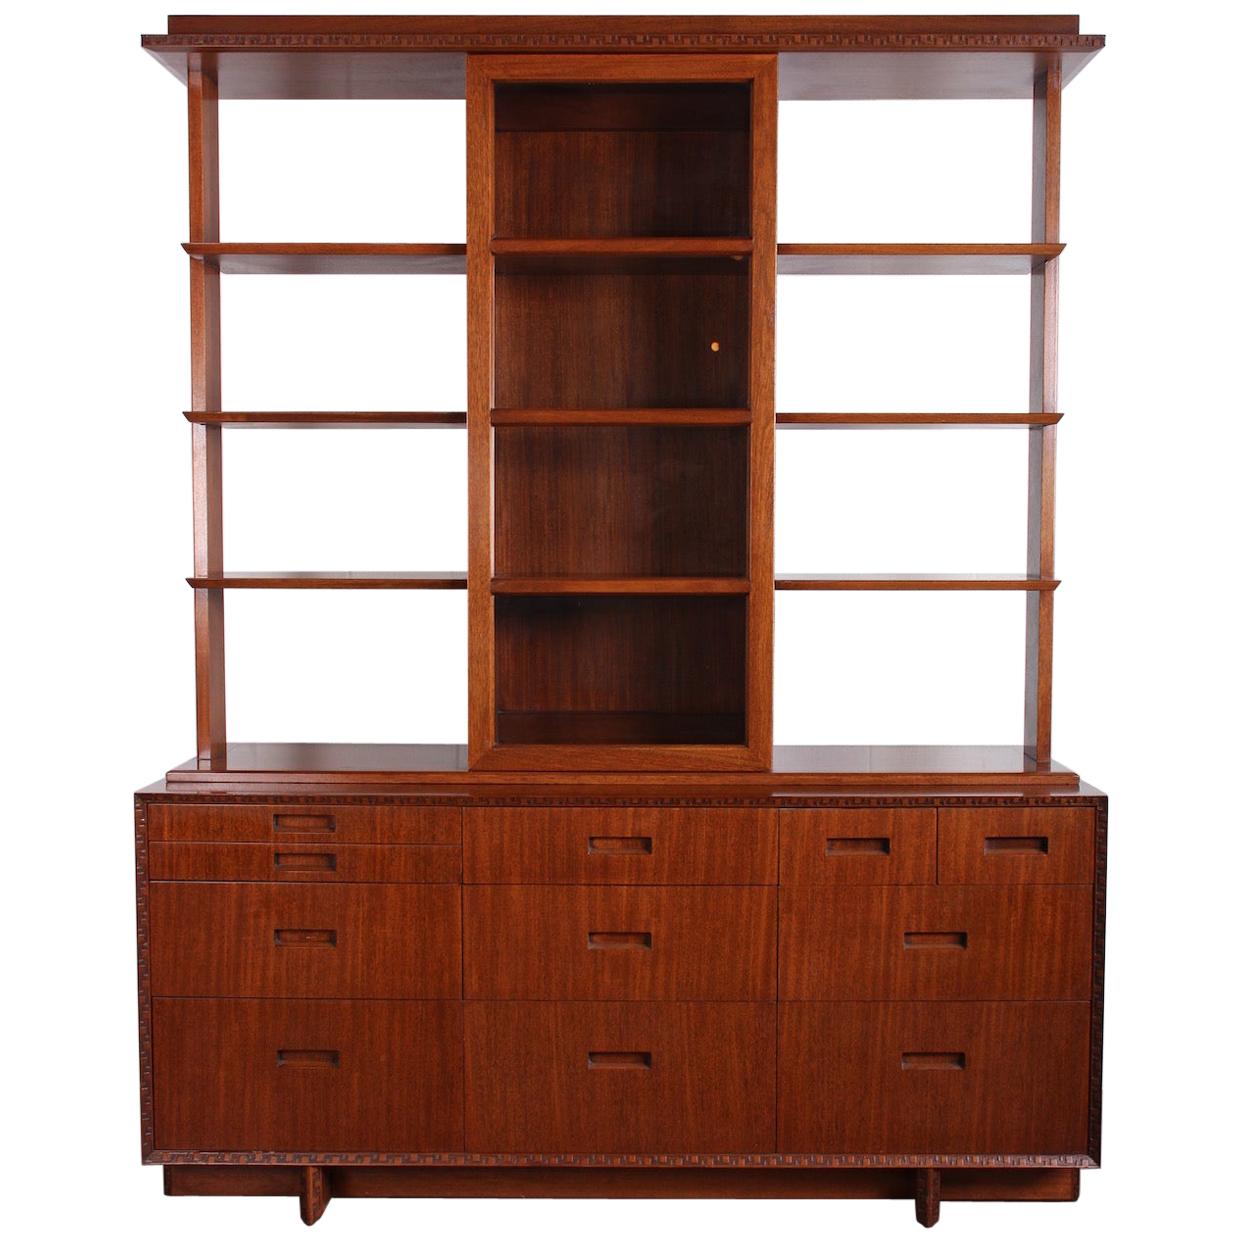 Frank Lloyd Wright 'Taliesin' Cabinet / Hutch